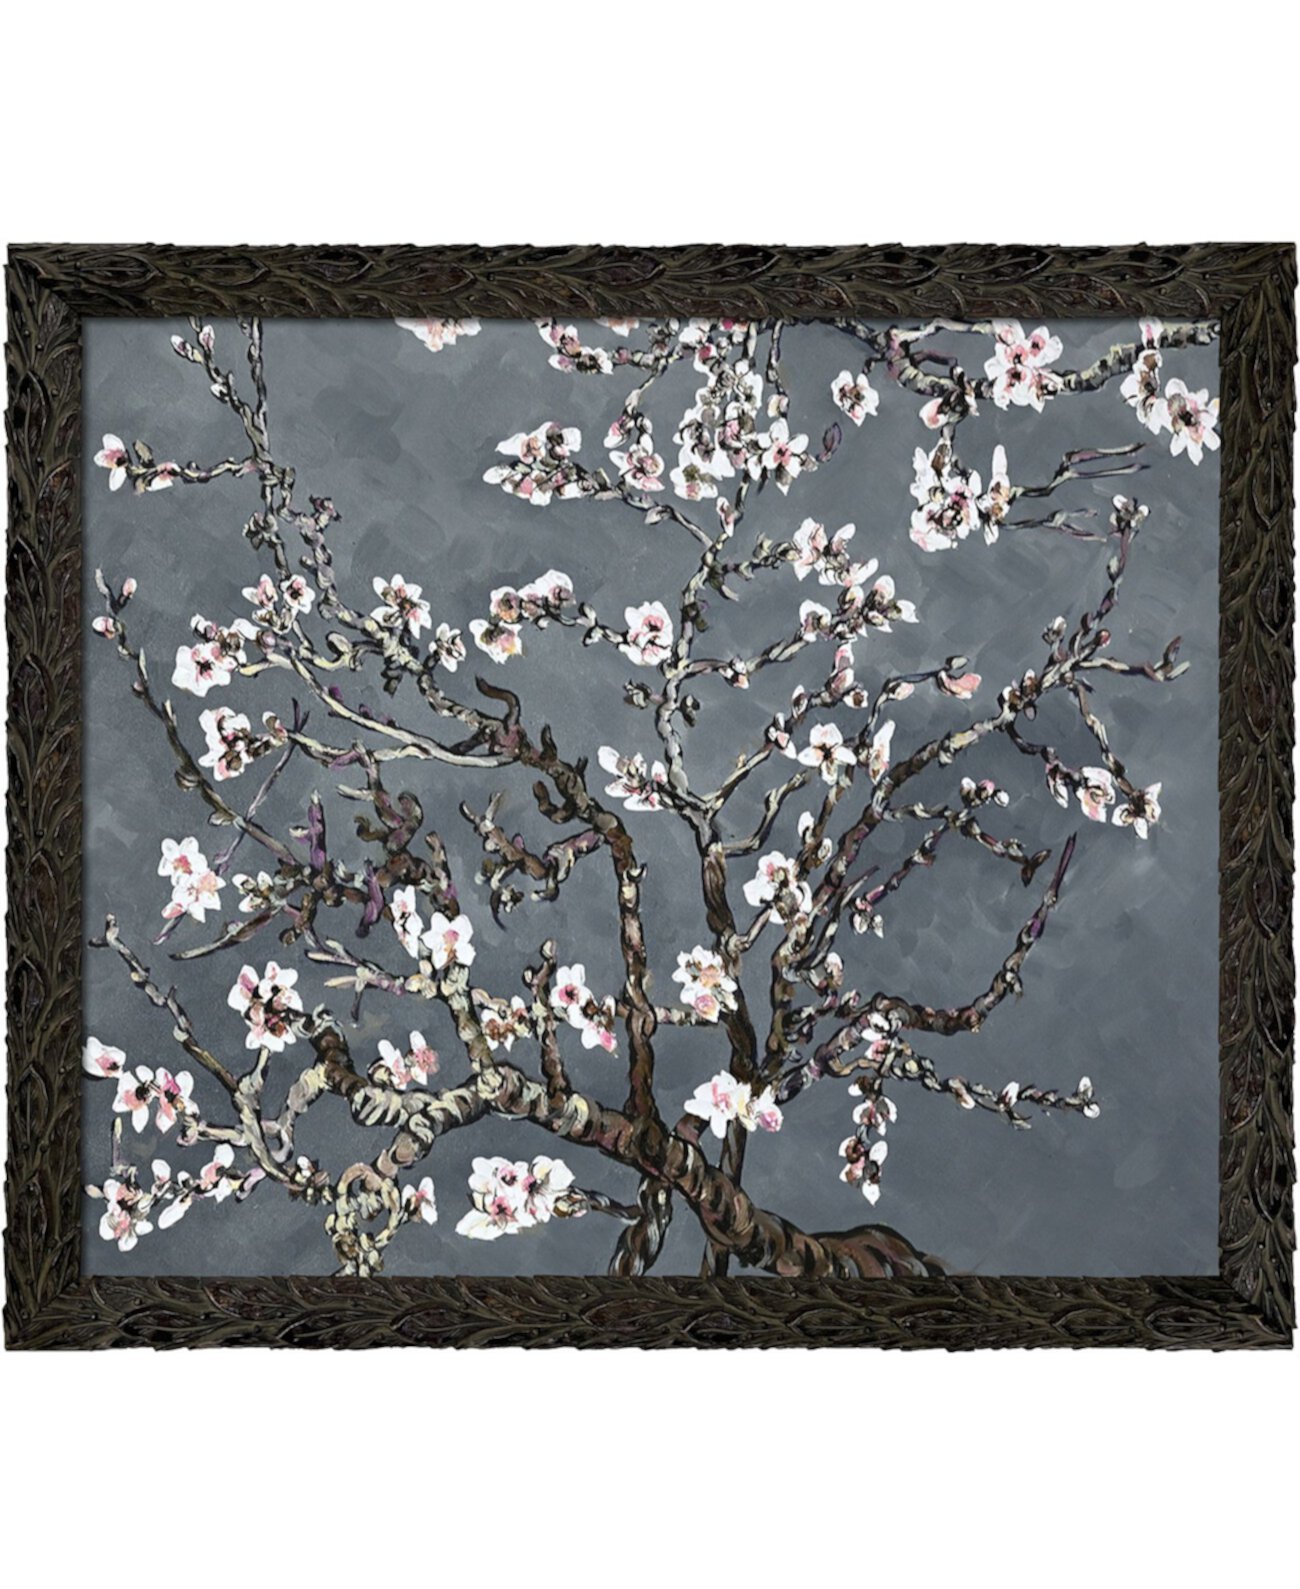 Ветки миндального дерева в цвете «Цветущий жемчуг» с рисунком в рамке из пернатого черного дерева, 27,24 x 23,24 дюйма La Pastiche